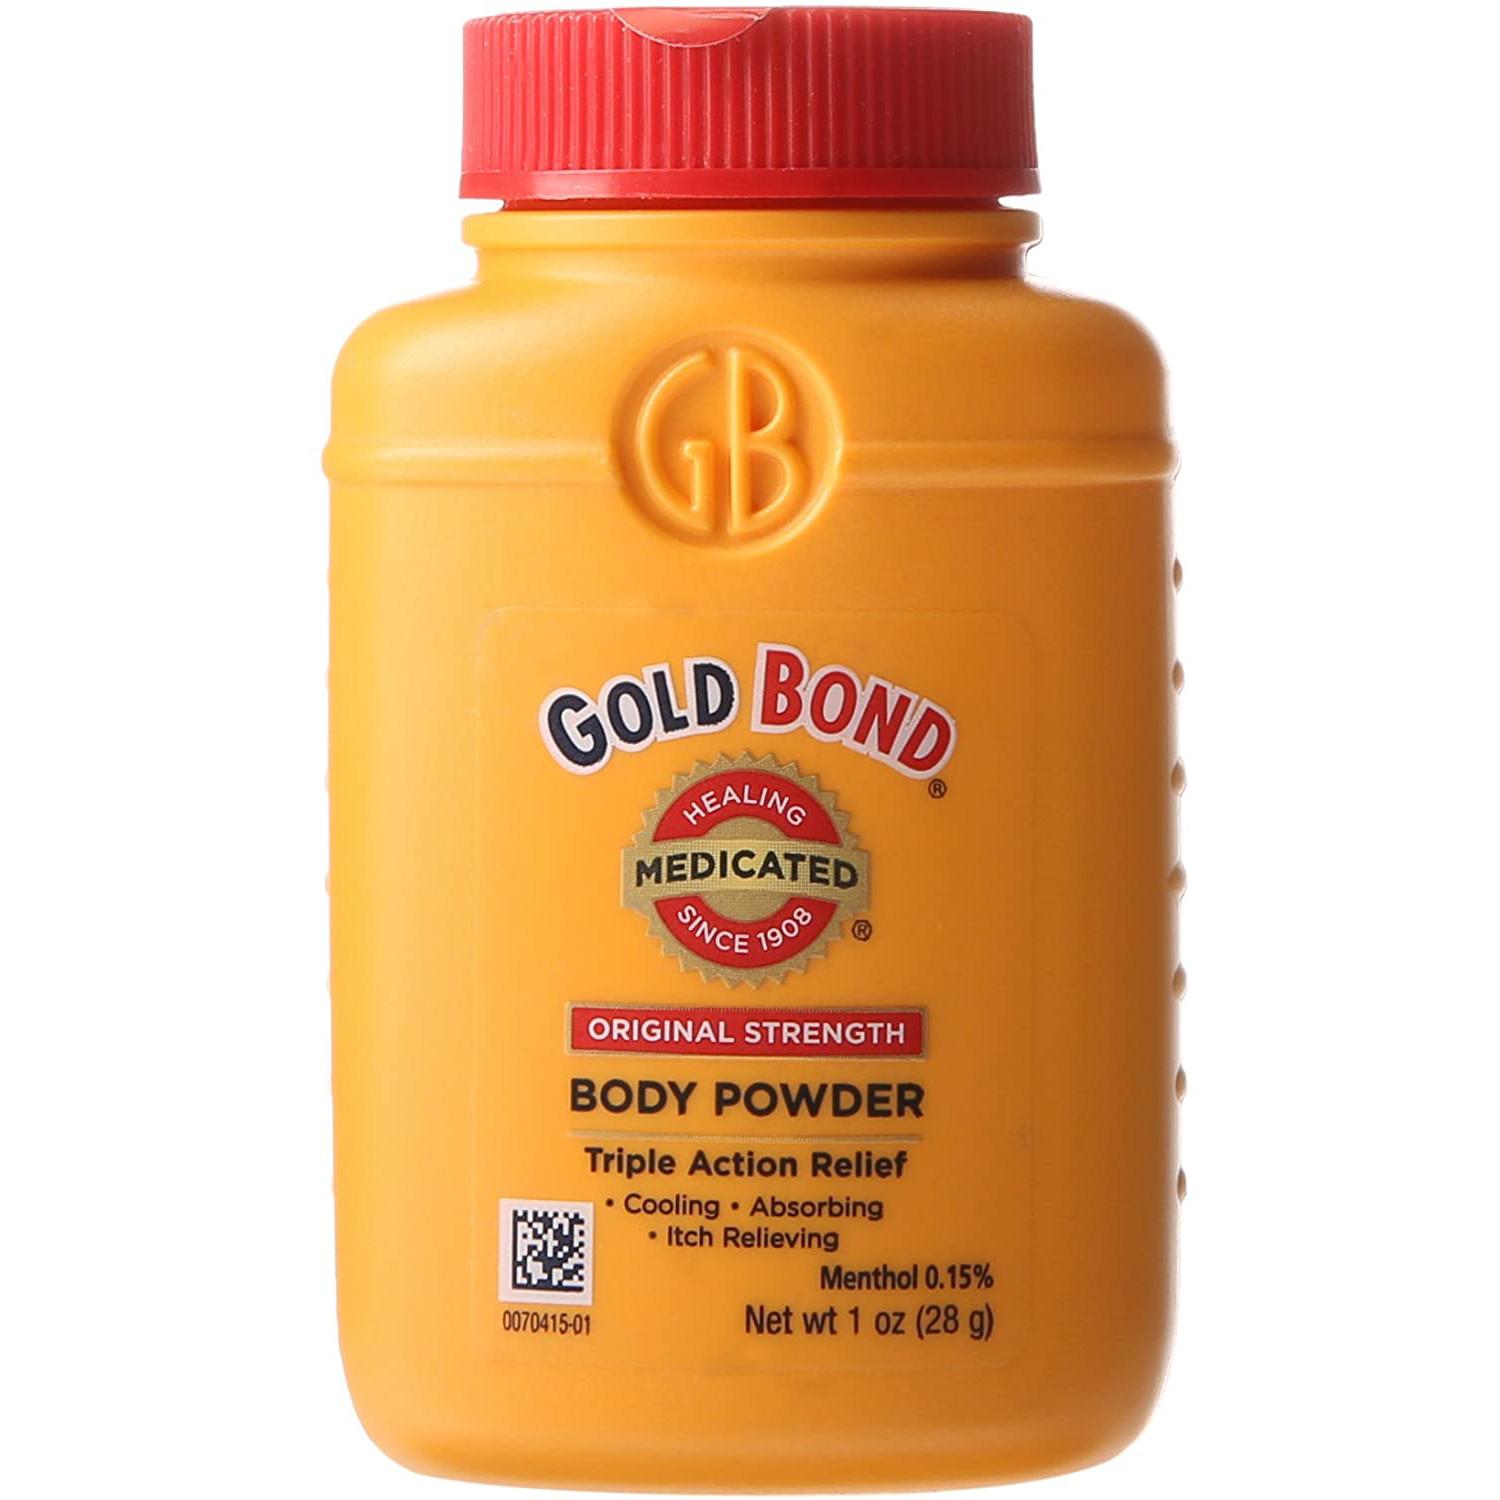 Gold Bond Original Strength Body Powder for $0.63 Shipped